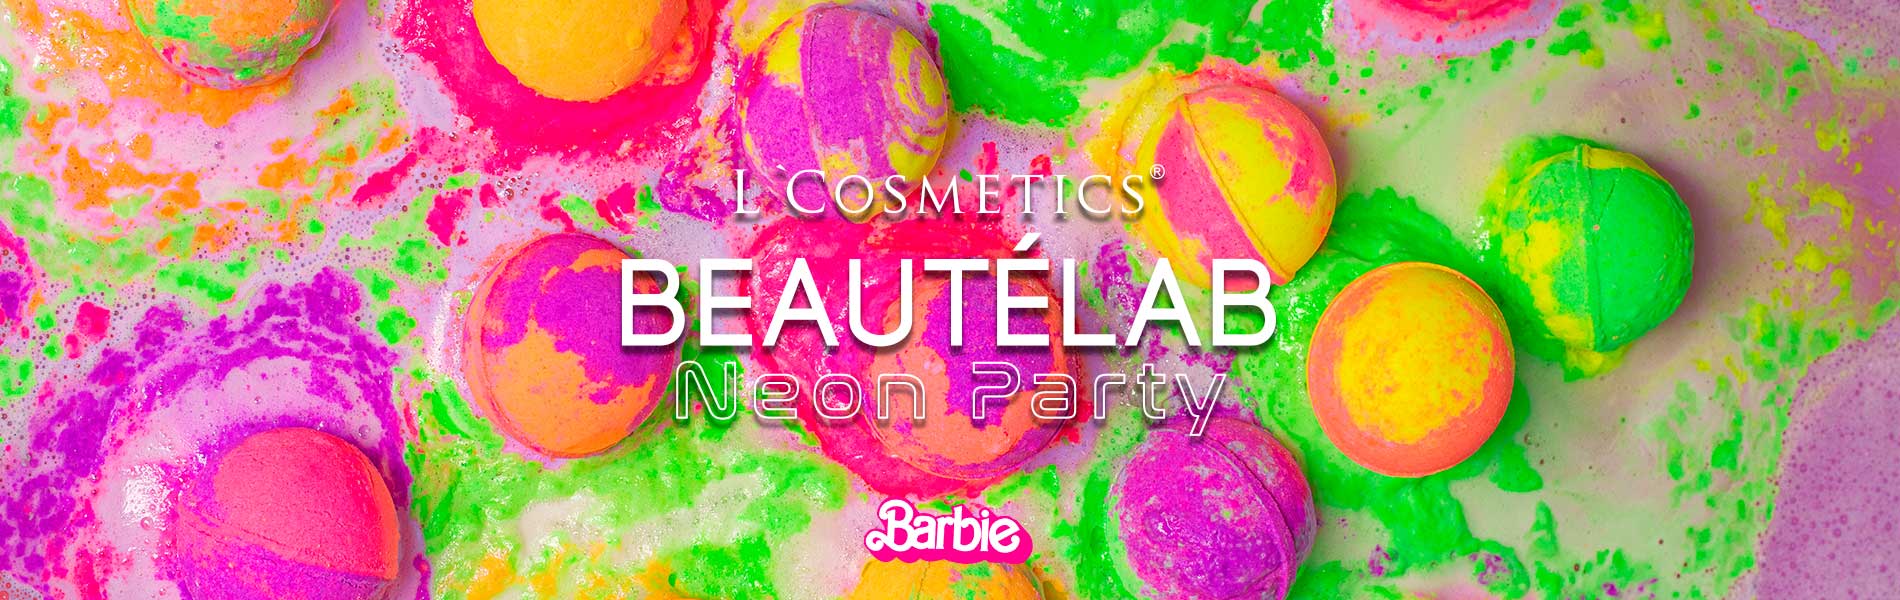 Бомбочки  для ванной BEAUTÉLAB серии Neon Party станут отличным подарком для всех любителей Barbie и яркого настроения.